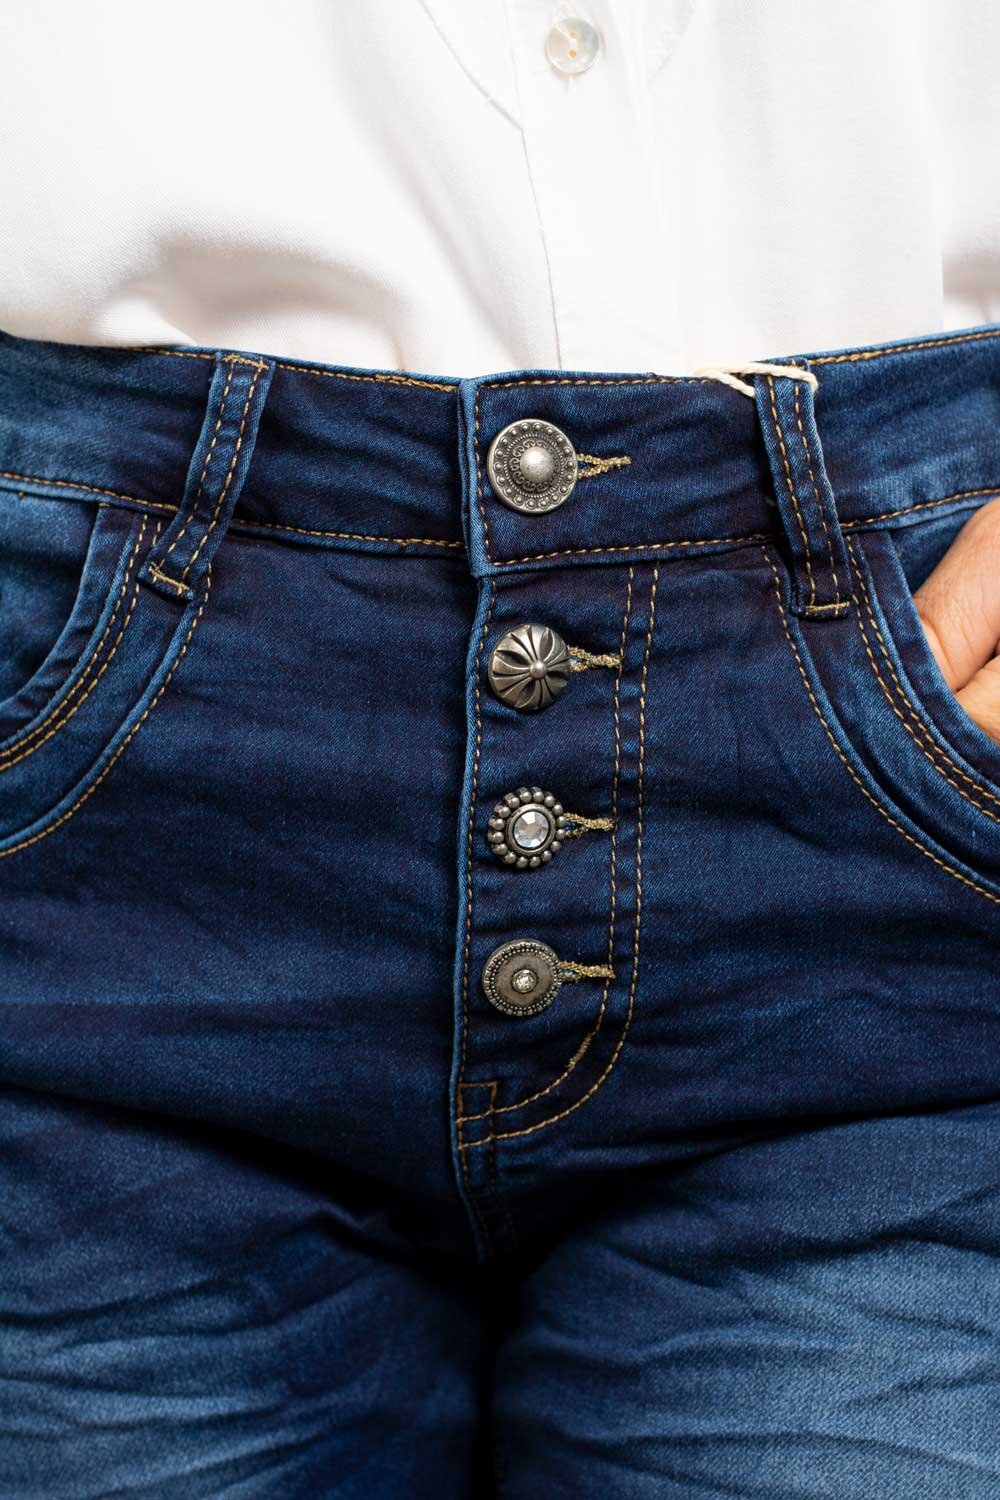 Jeans JW7071 - Buttons - Denim